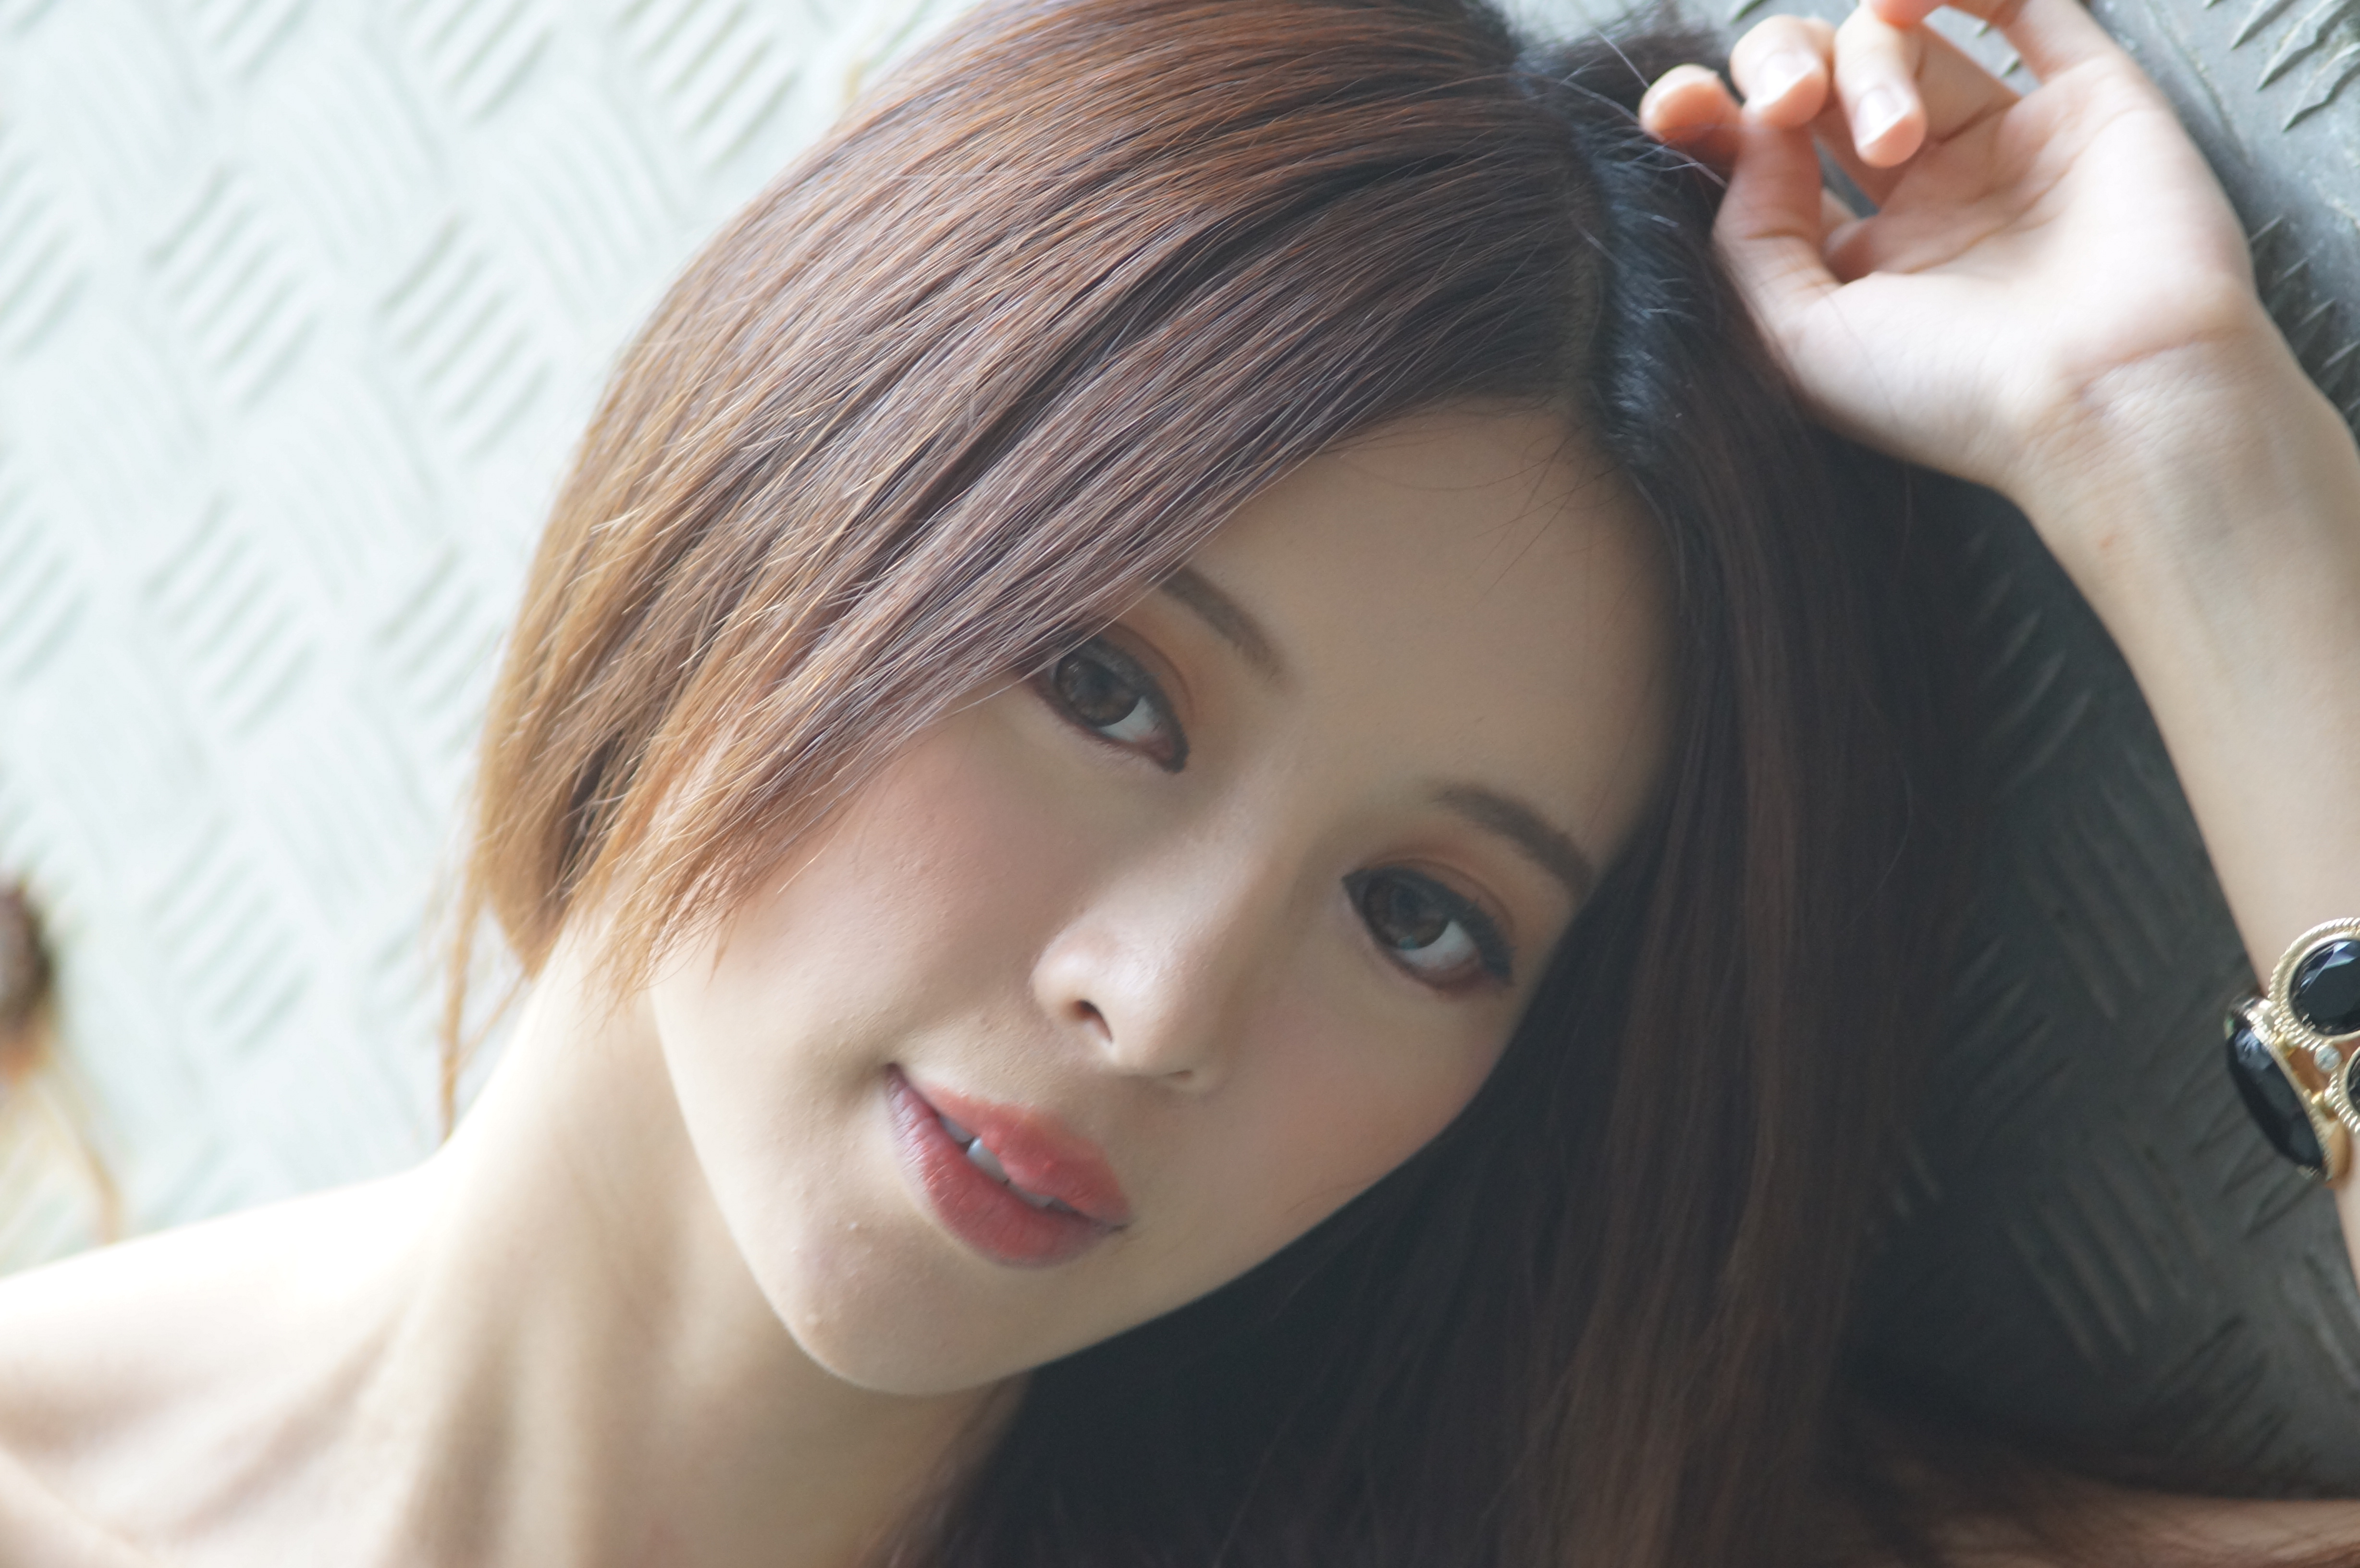 Asian Face Girl Hair Julie Chang Model Taiwanese Zhang Qi Jun 4912x3264